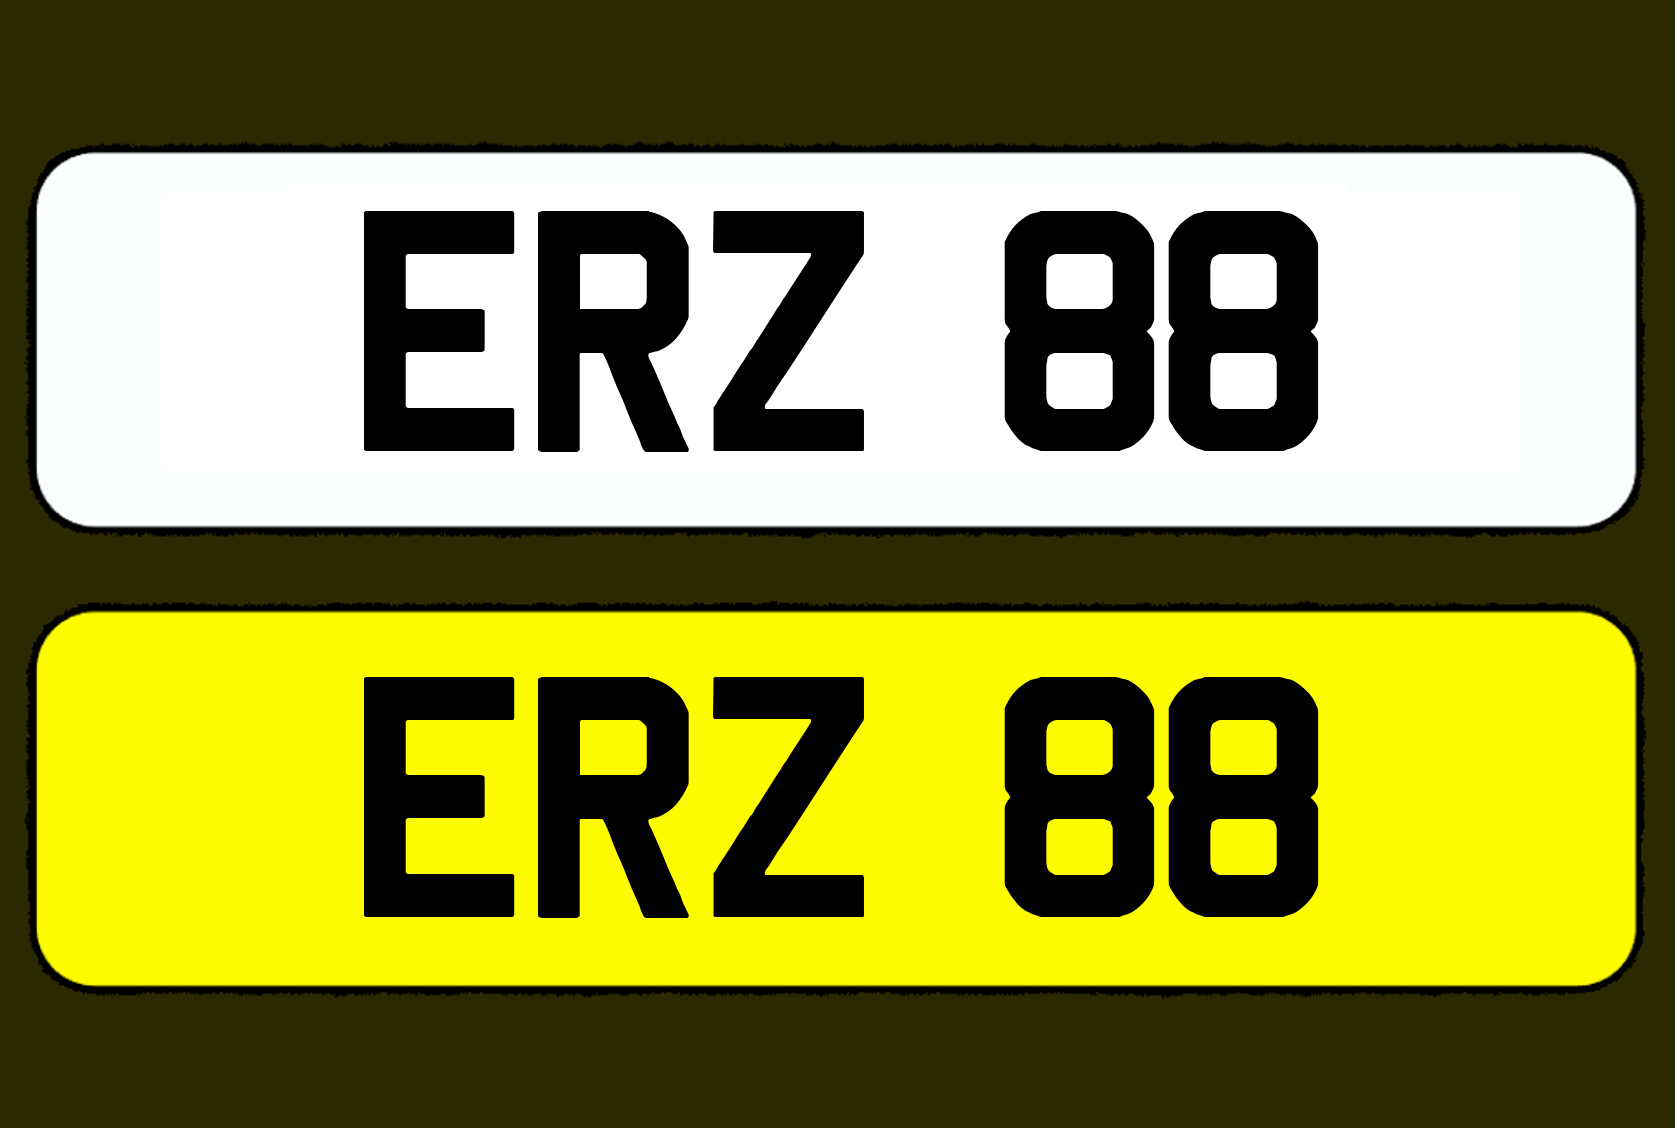 ERZ 88